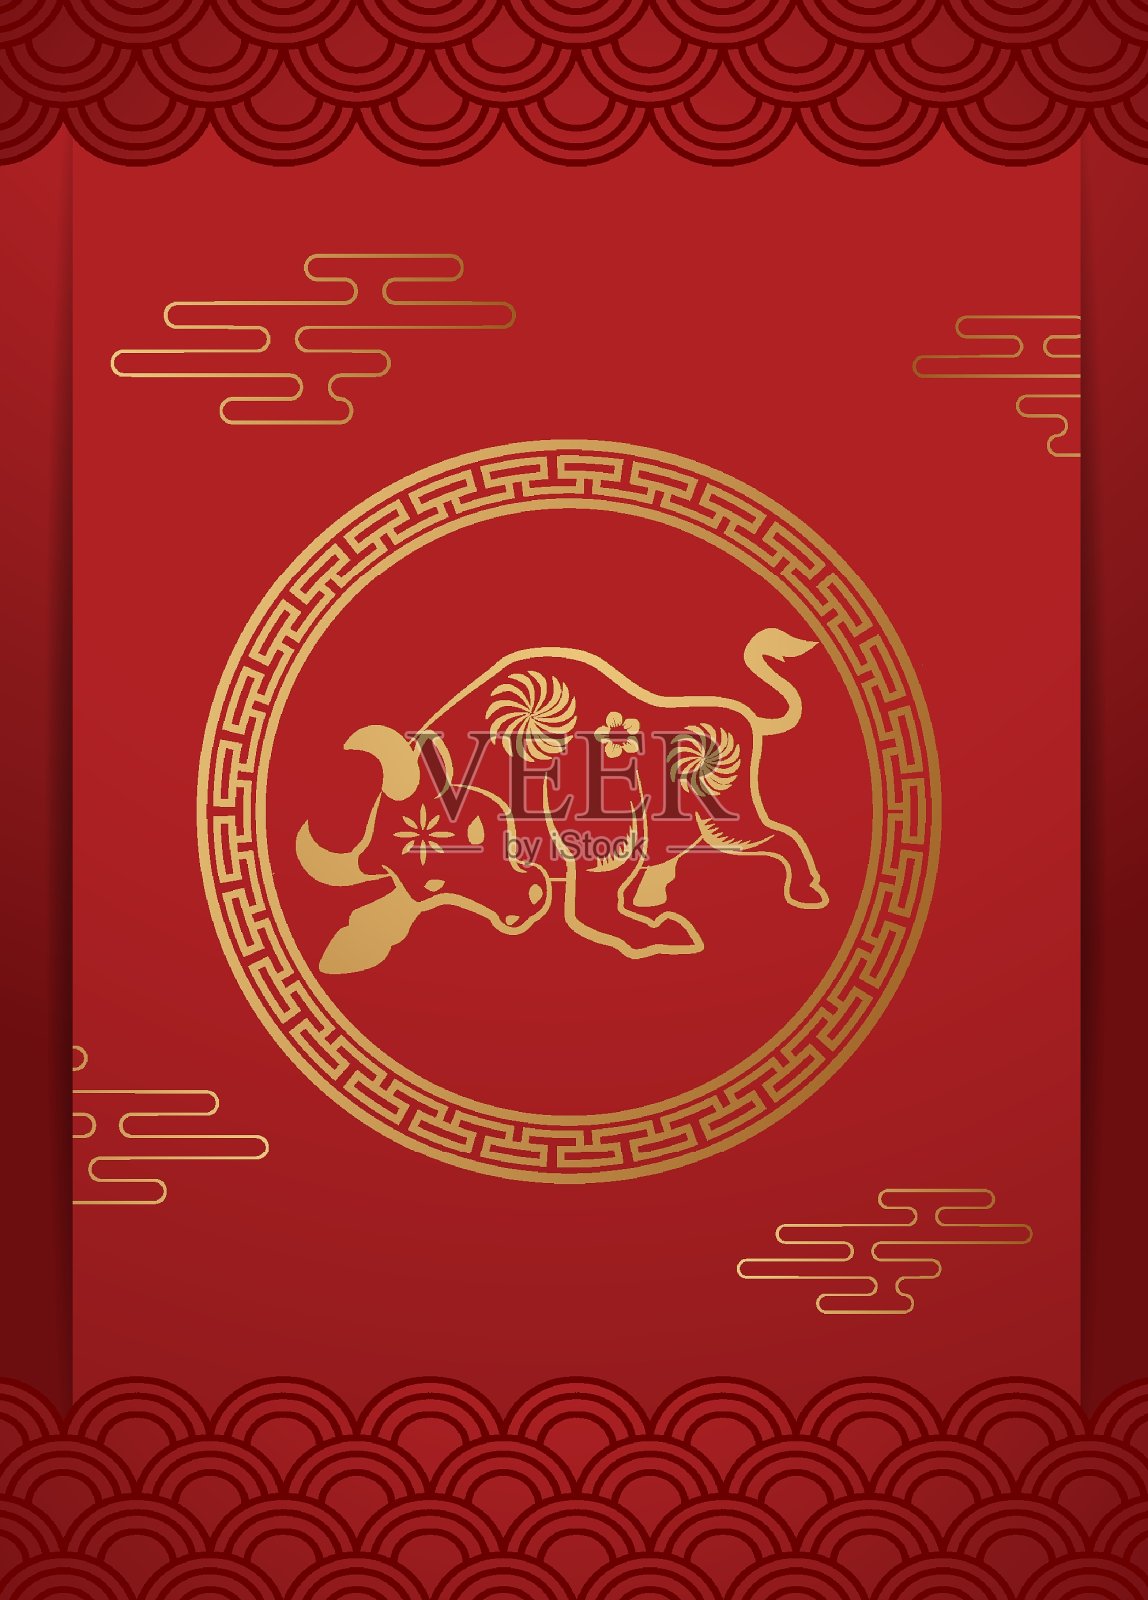 2021年中国新年贺年卡生肖剪纸。牛年，金色和红色点缀。概念假日横幅模板，装饰元素。翻译过来就是:2021年春节快乐，插画图片素材